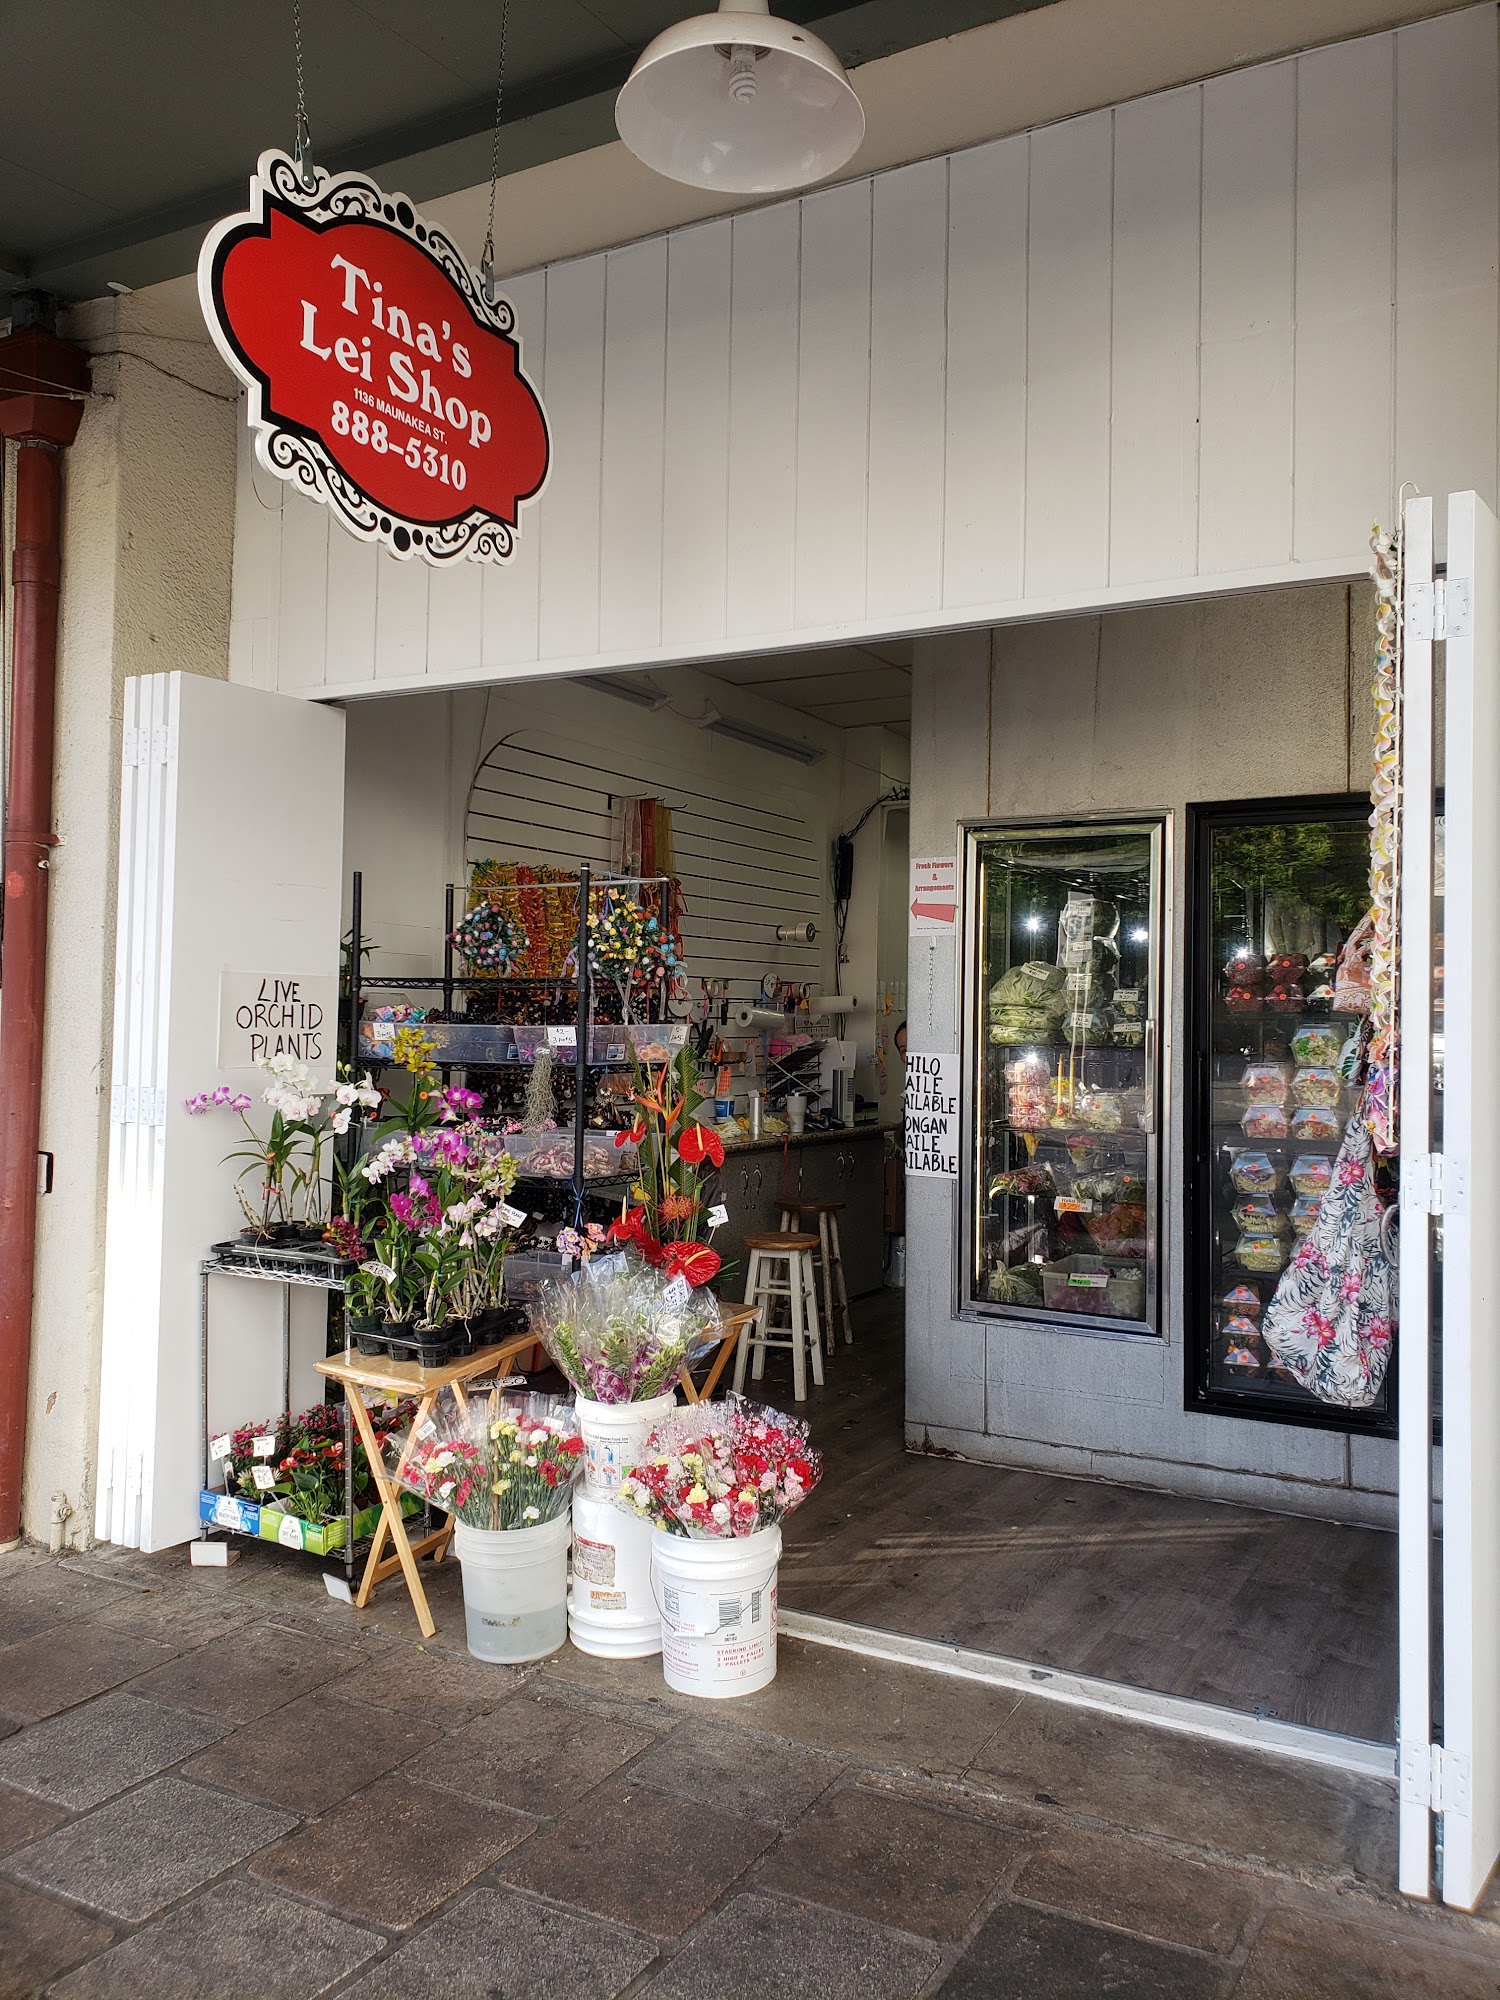 Tina's Lei Shop